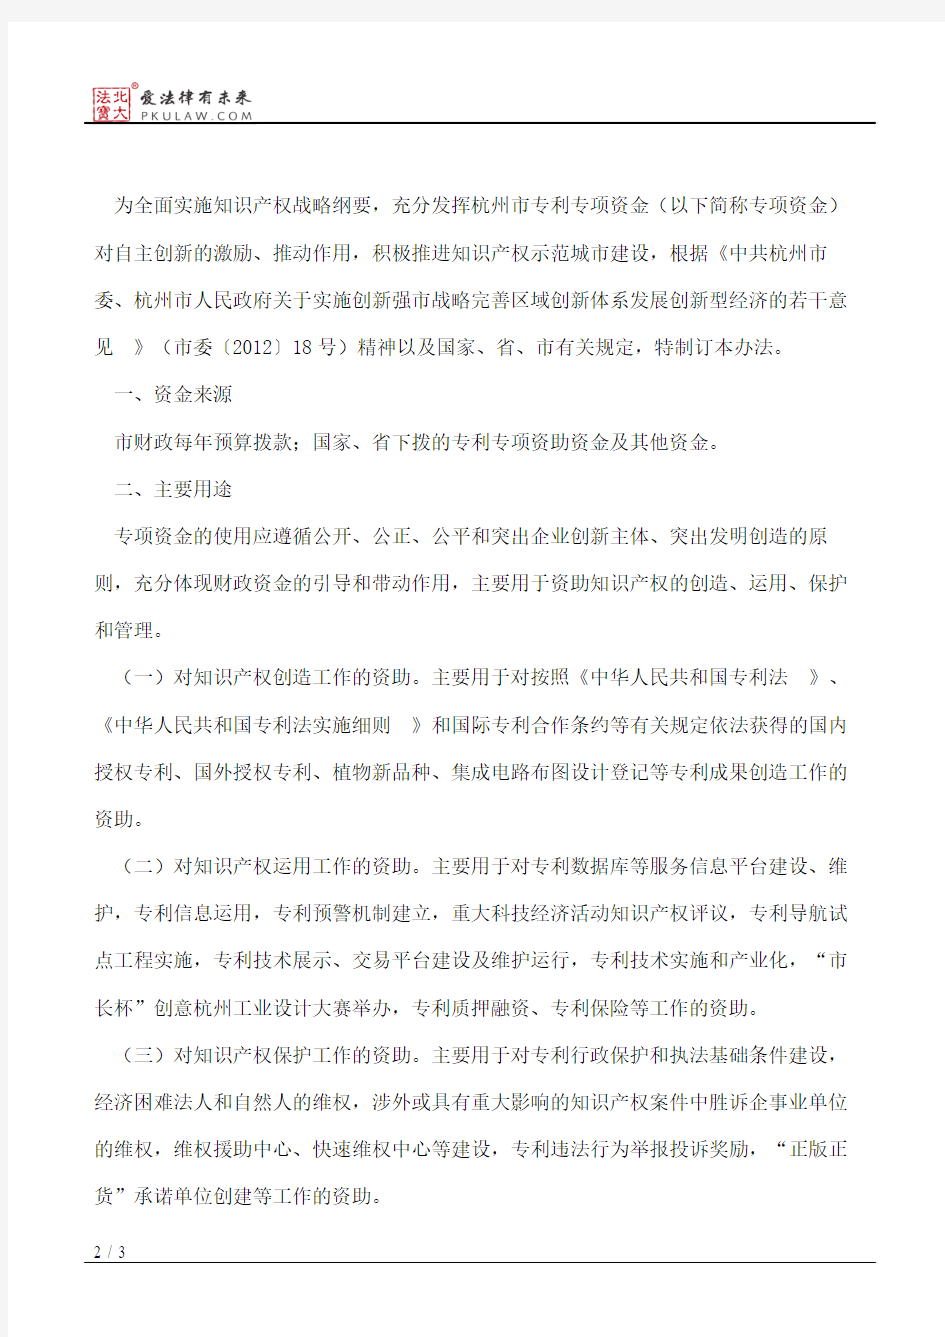 杭州市人民政府办公厅关于印发杭州市专利专项资金管理办法的通知